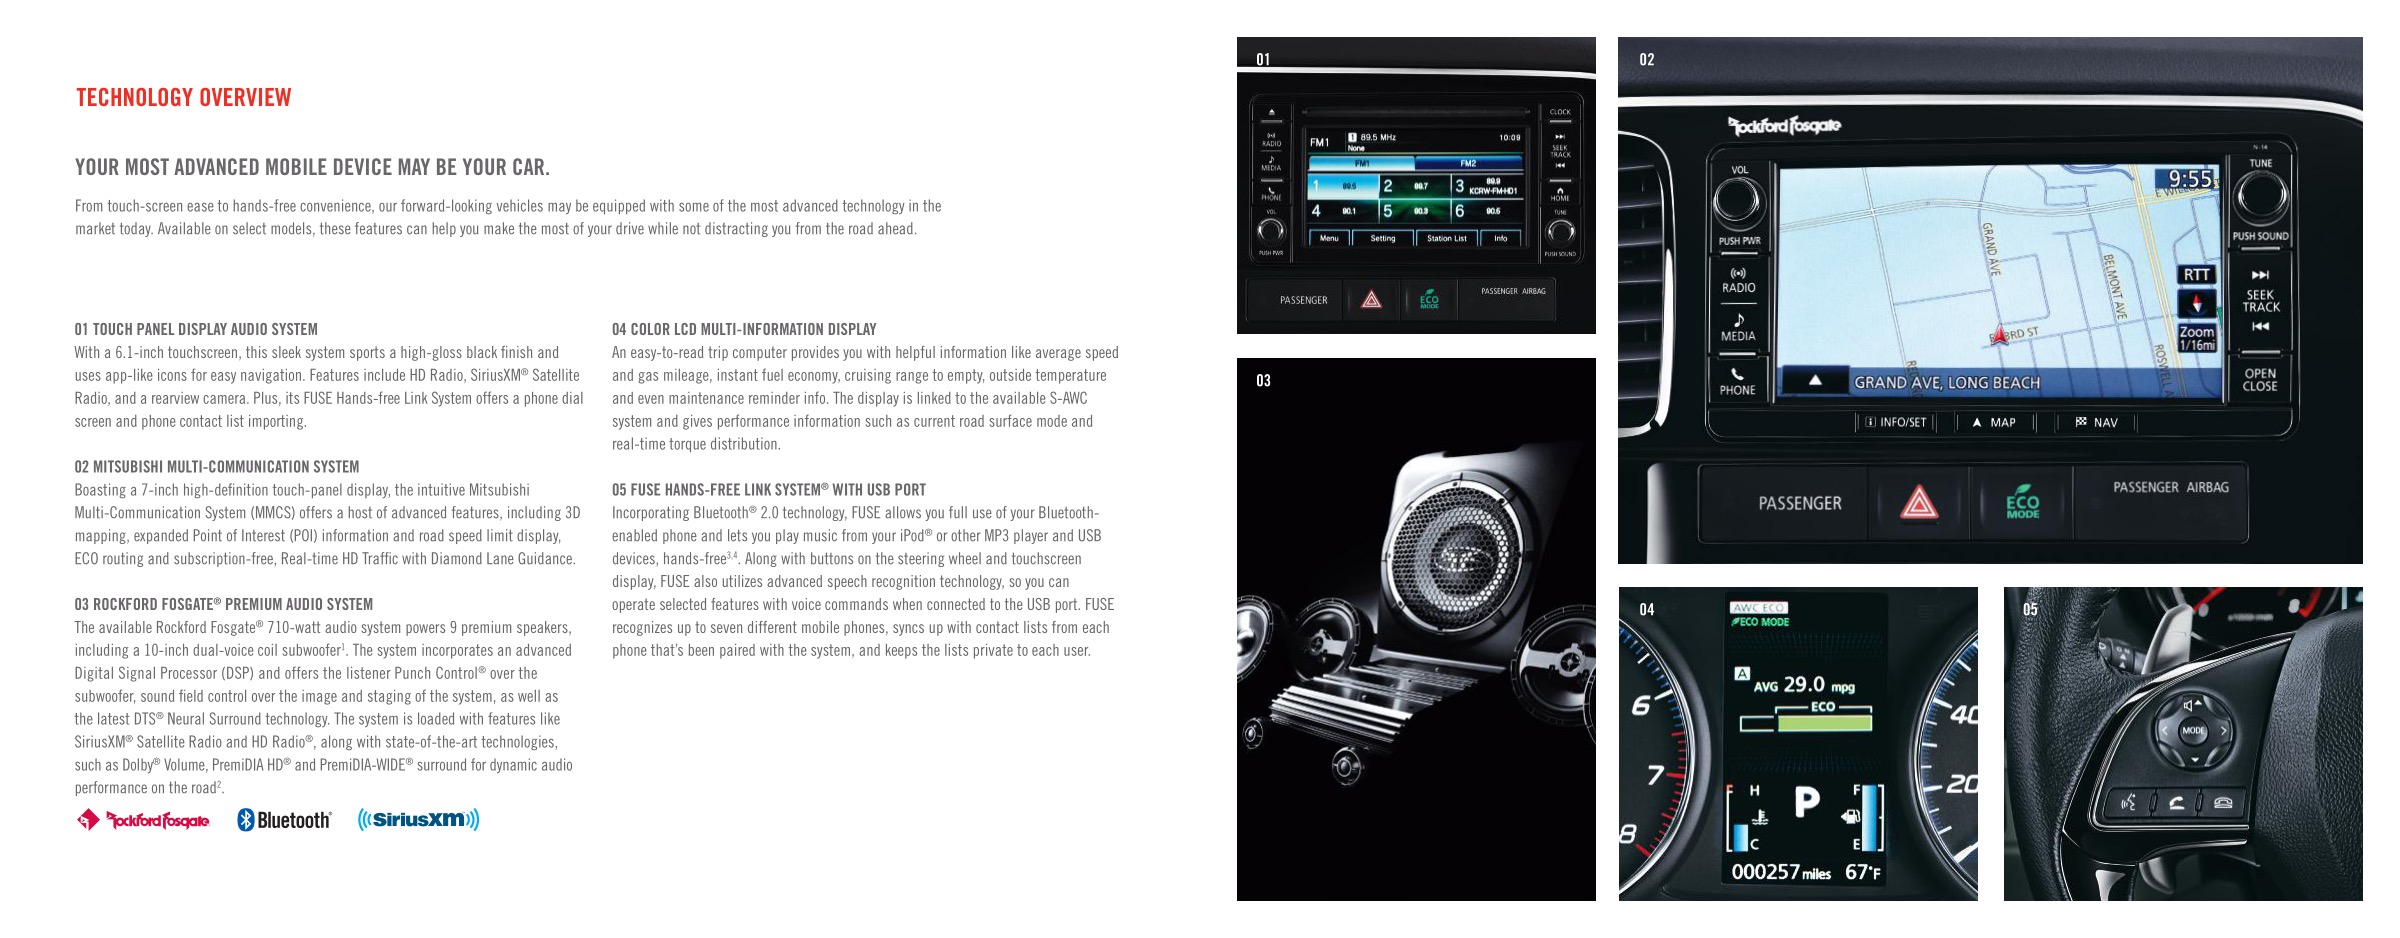 2016 Mitsubishi Full Line Brochure Page 1